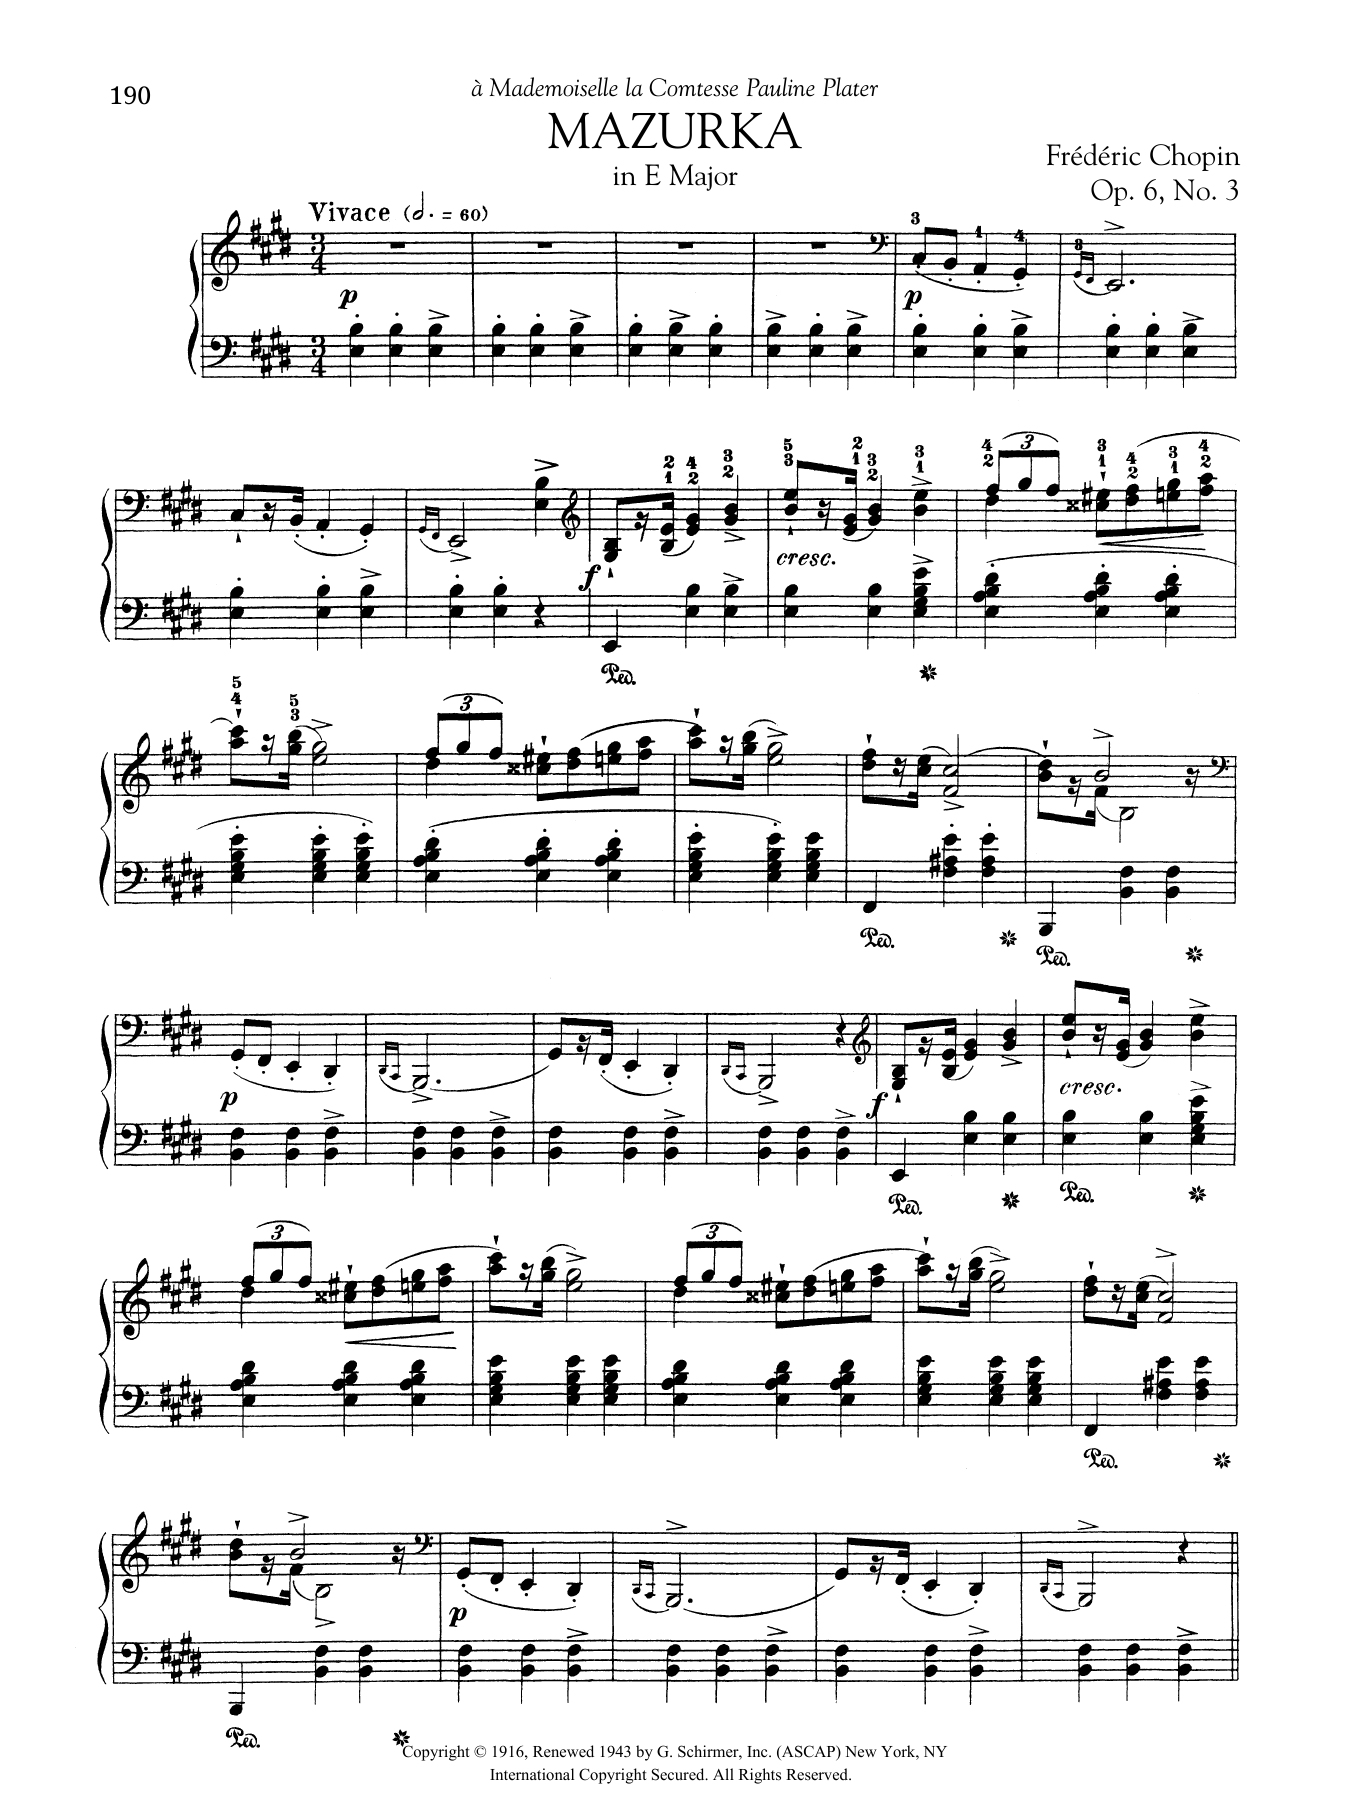 Download Frederic Chopin Mazurka in E Major, Op. 6, No. 3 Sheet Music